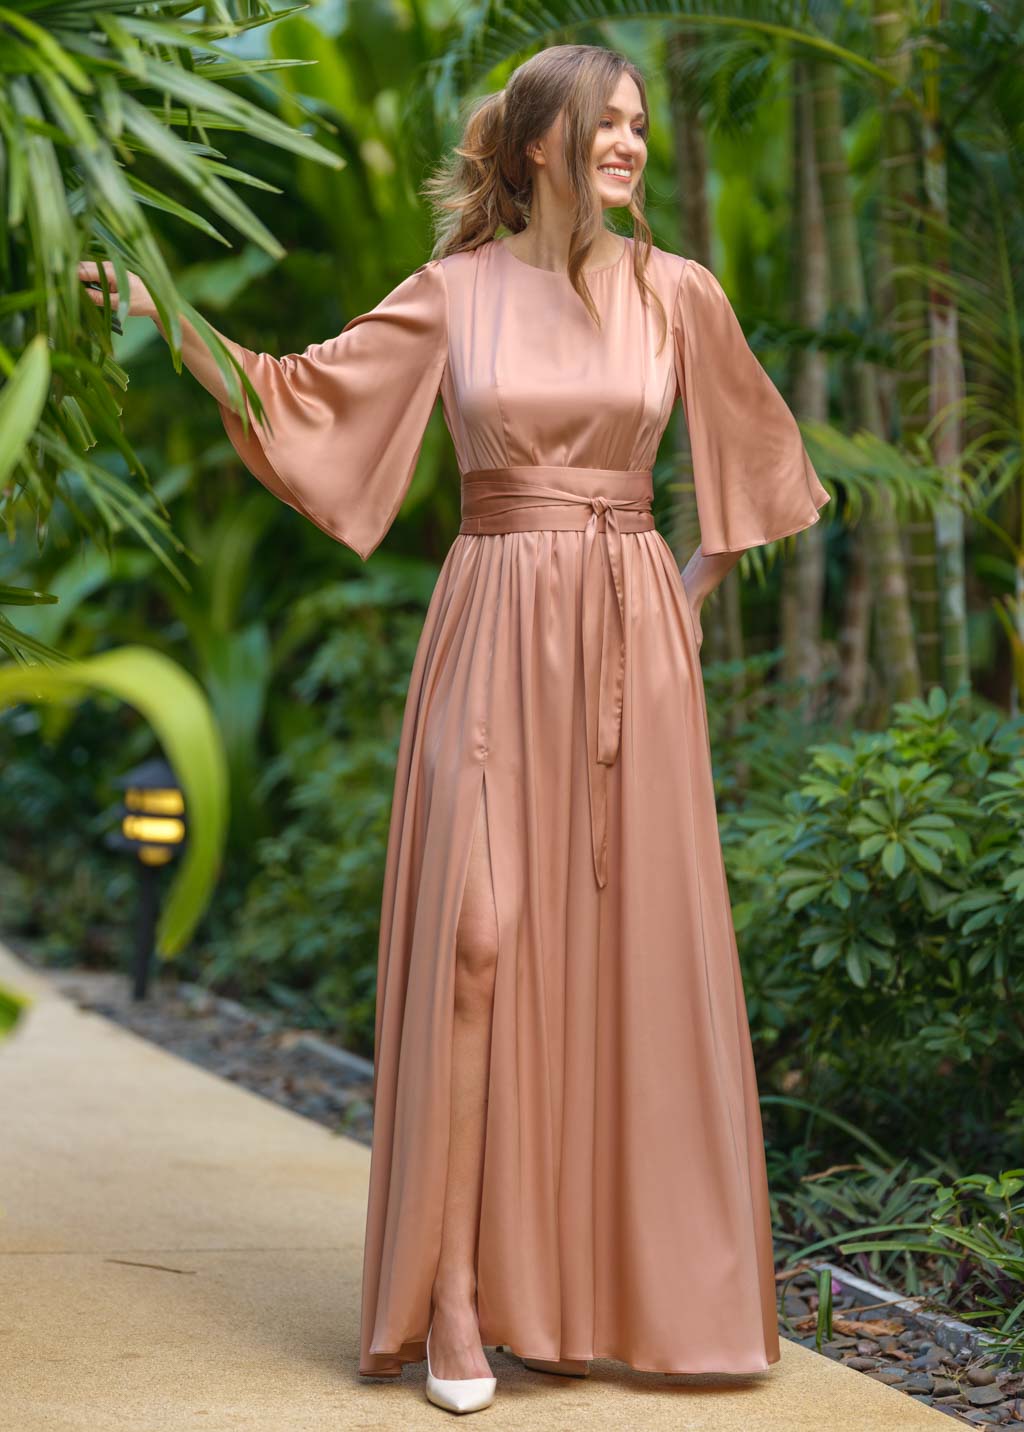 Rose gold silk slit dress with belt